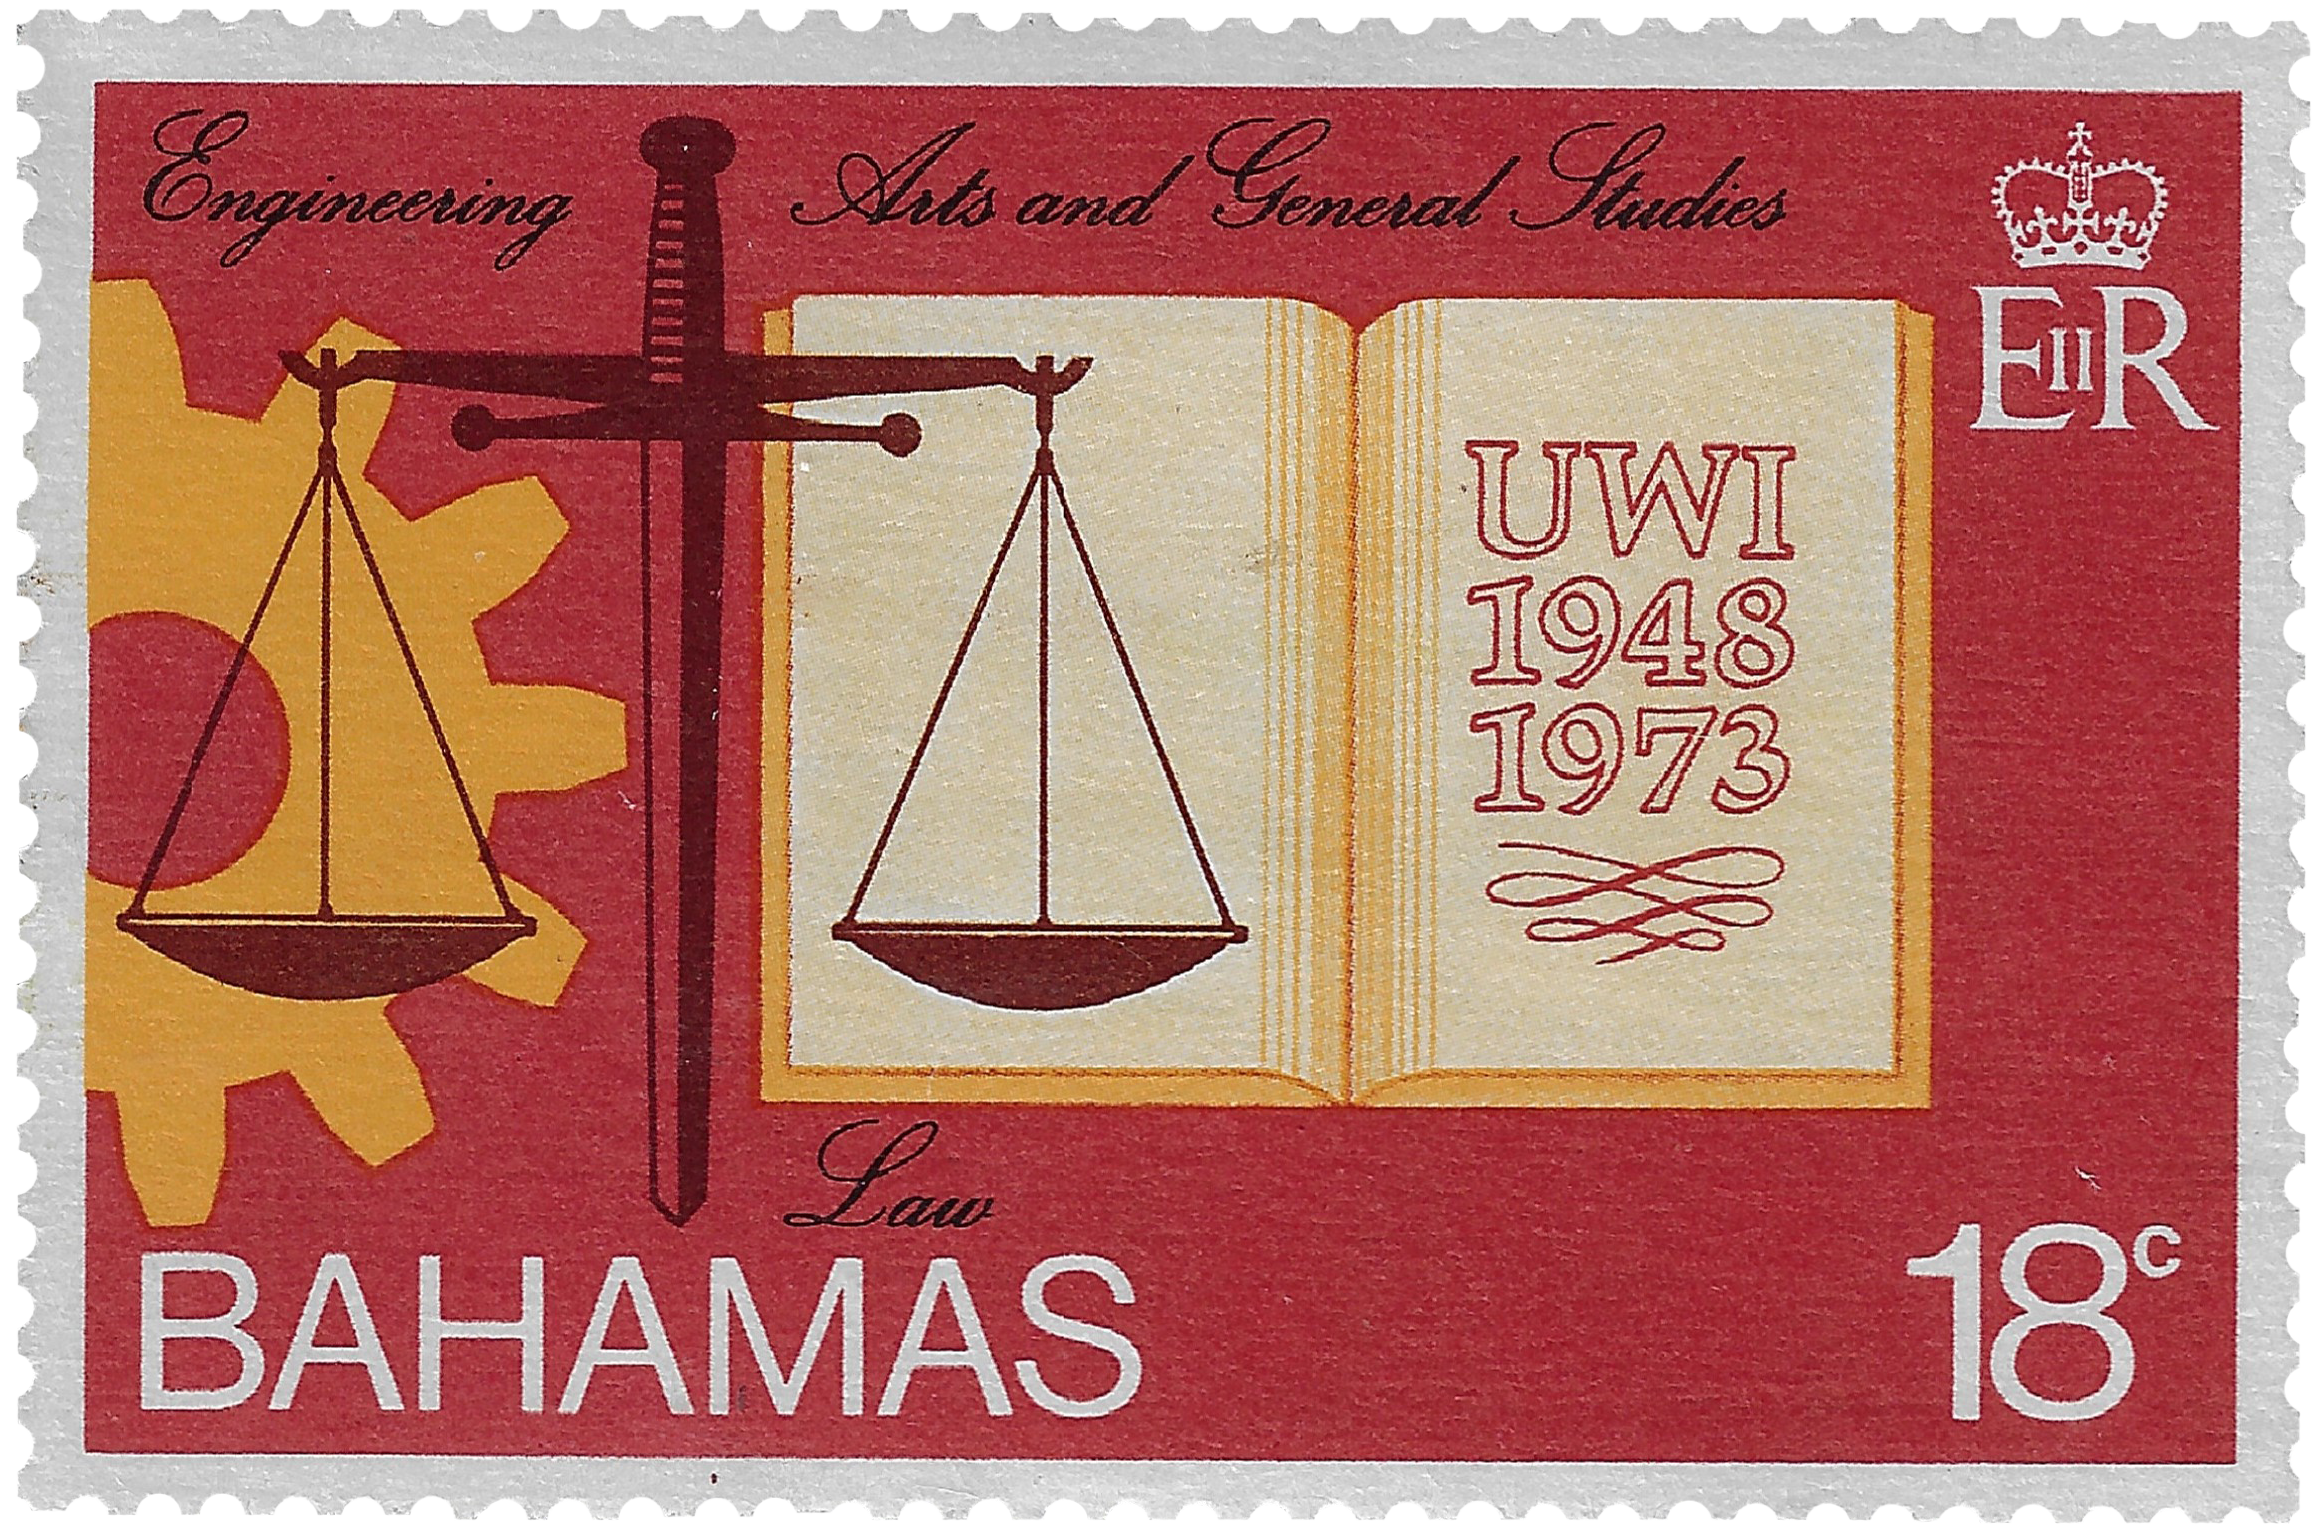 18c 1973, Engineering, Arts and General Studies, Law, UWI 1948-1973